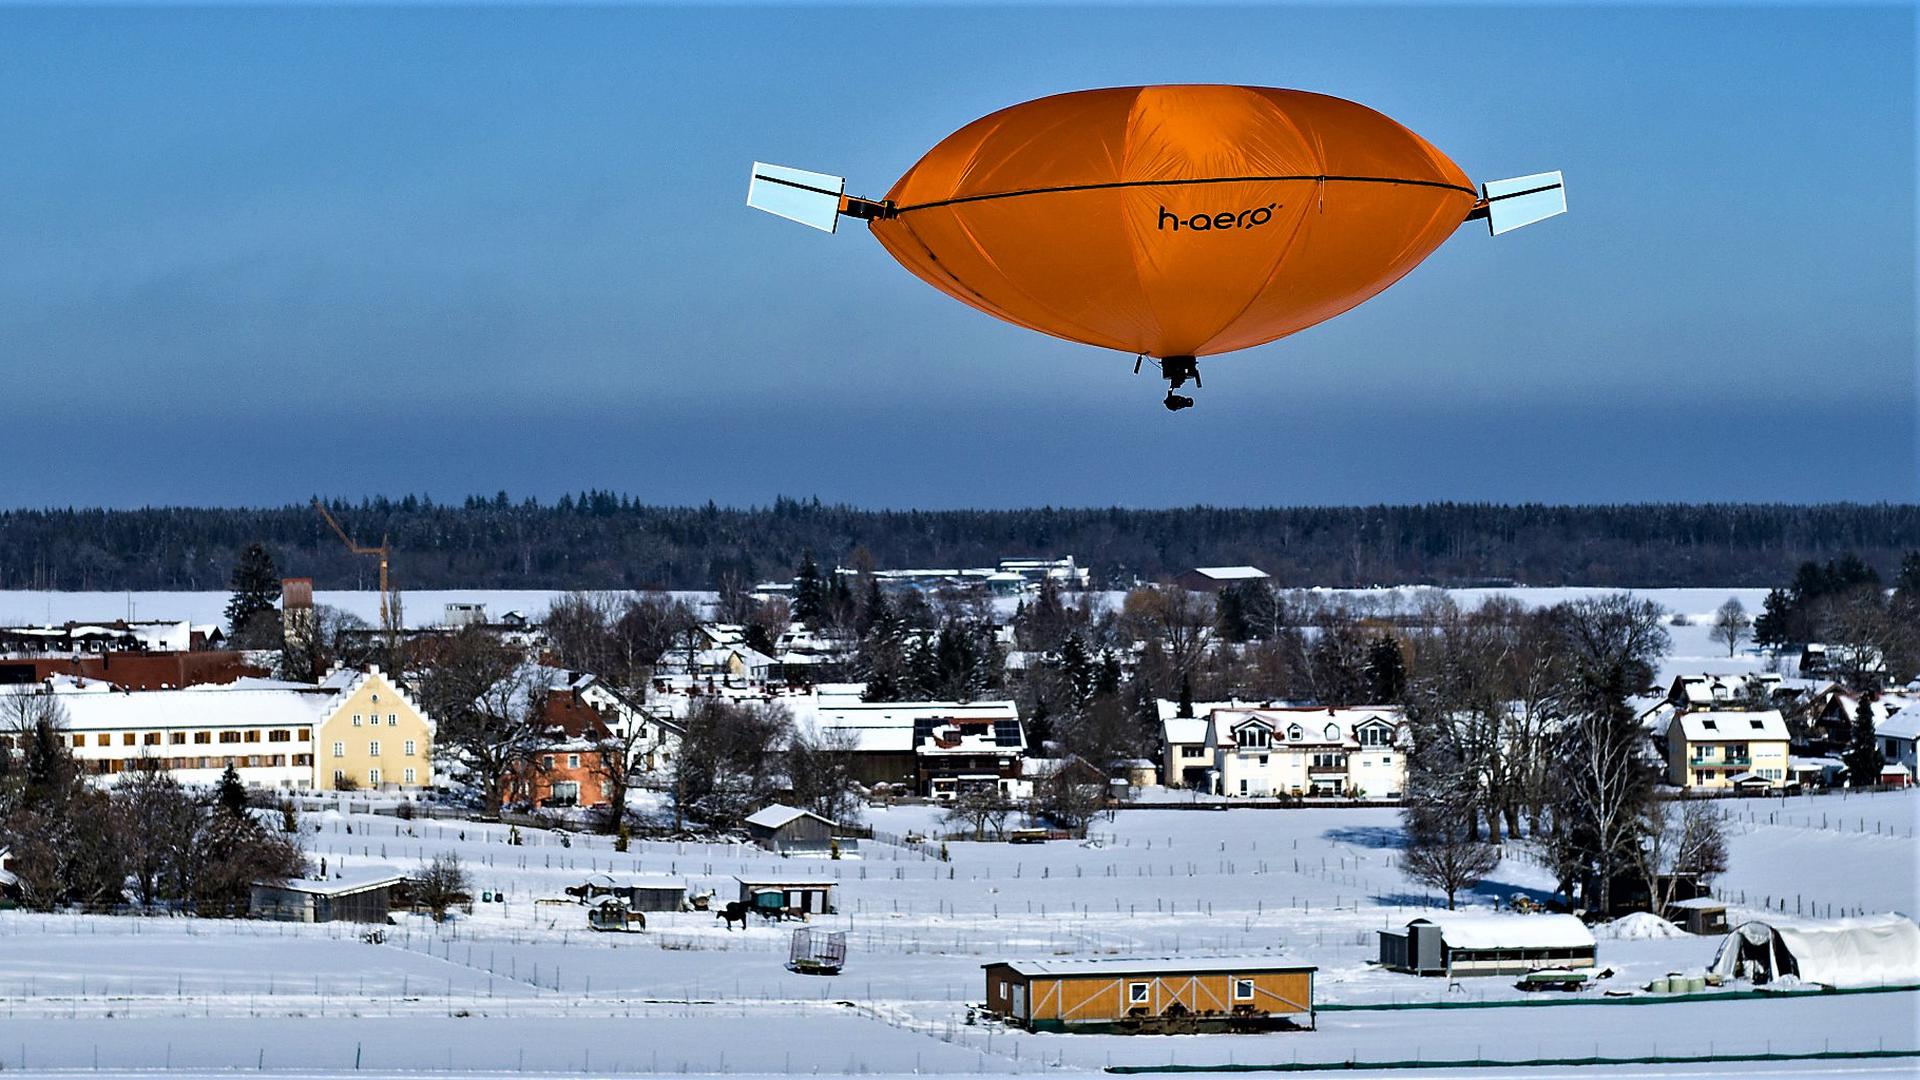 Das neuartige Fluggerät h-aero der Firma Hybrid-Airplane Technologies in Baden-Baden steht über einer verschneiten Landschaft